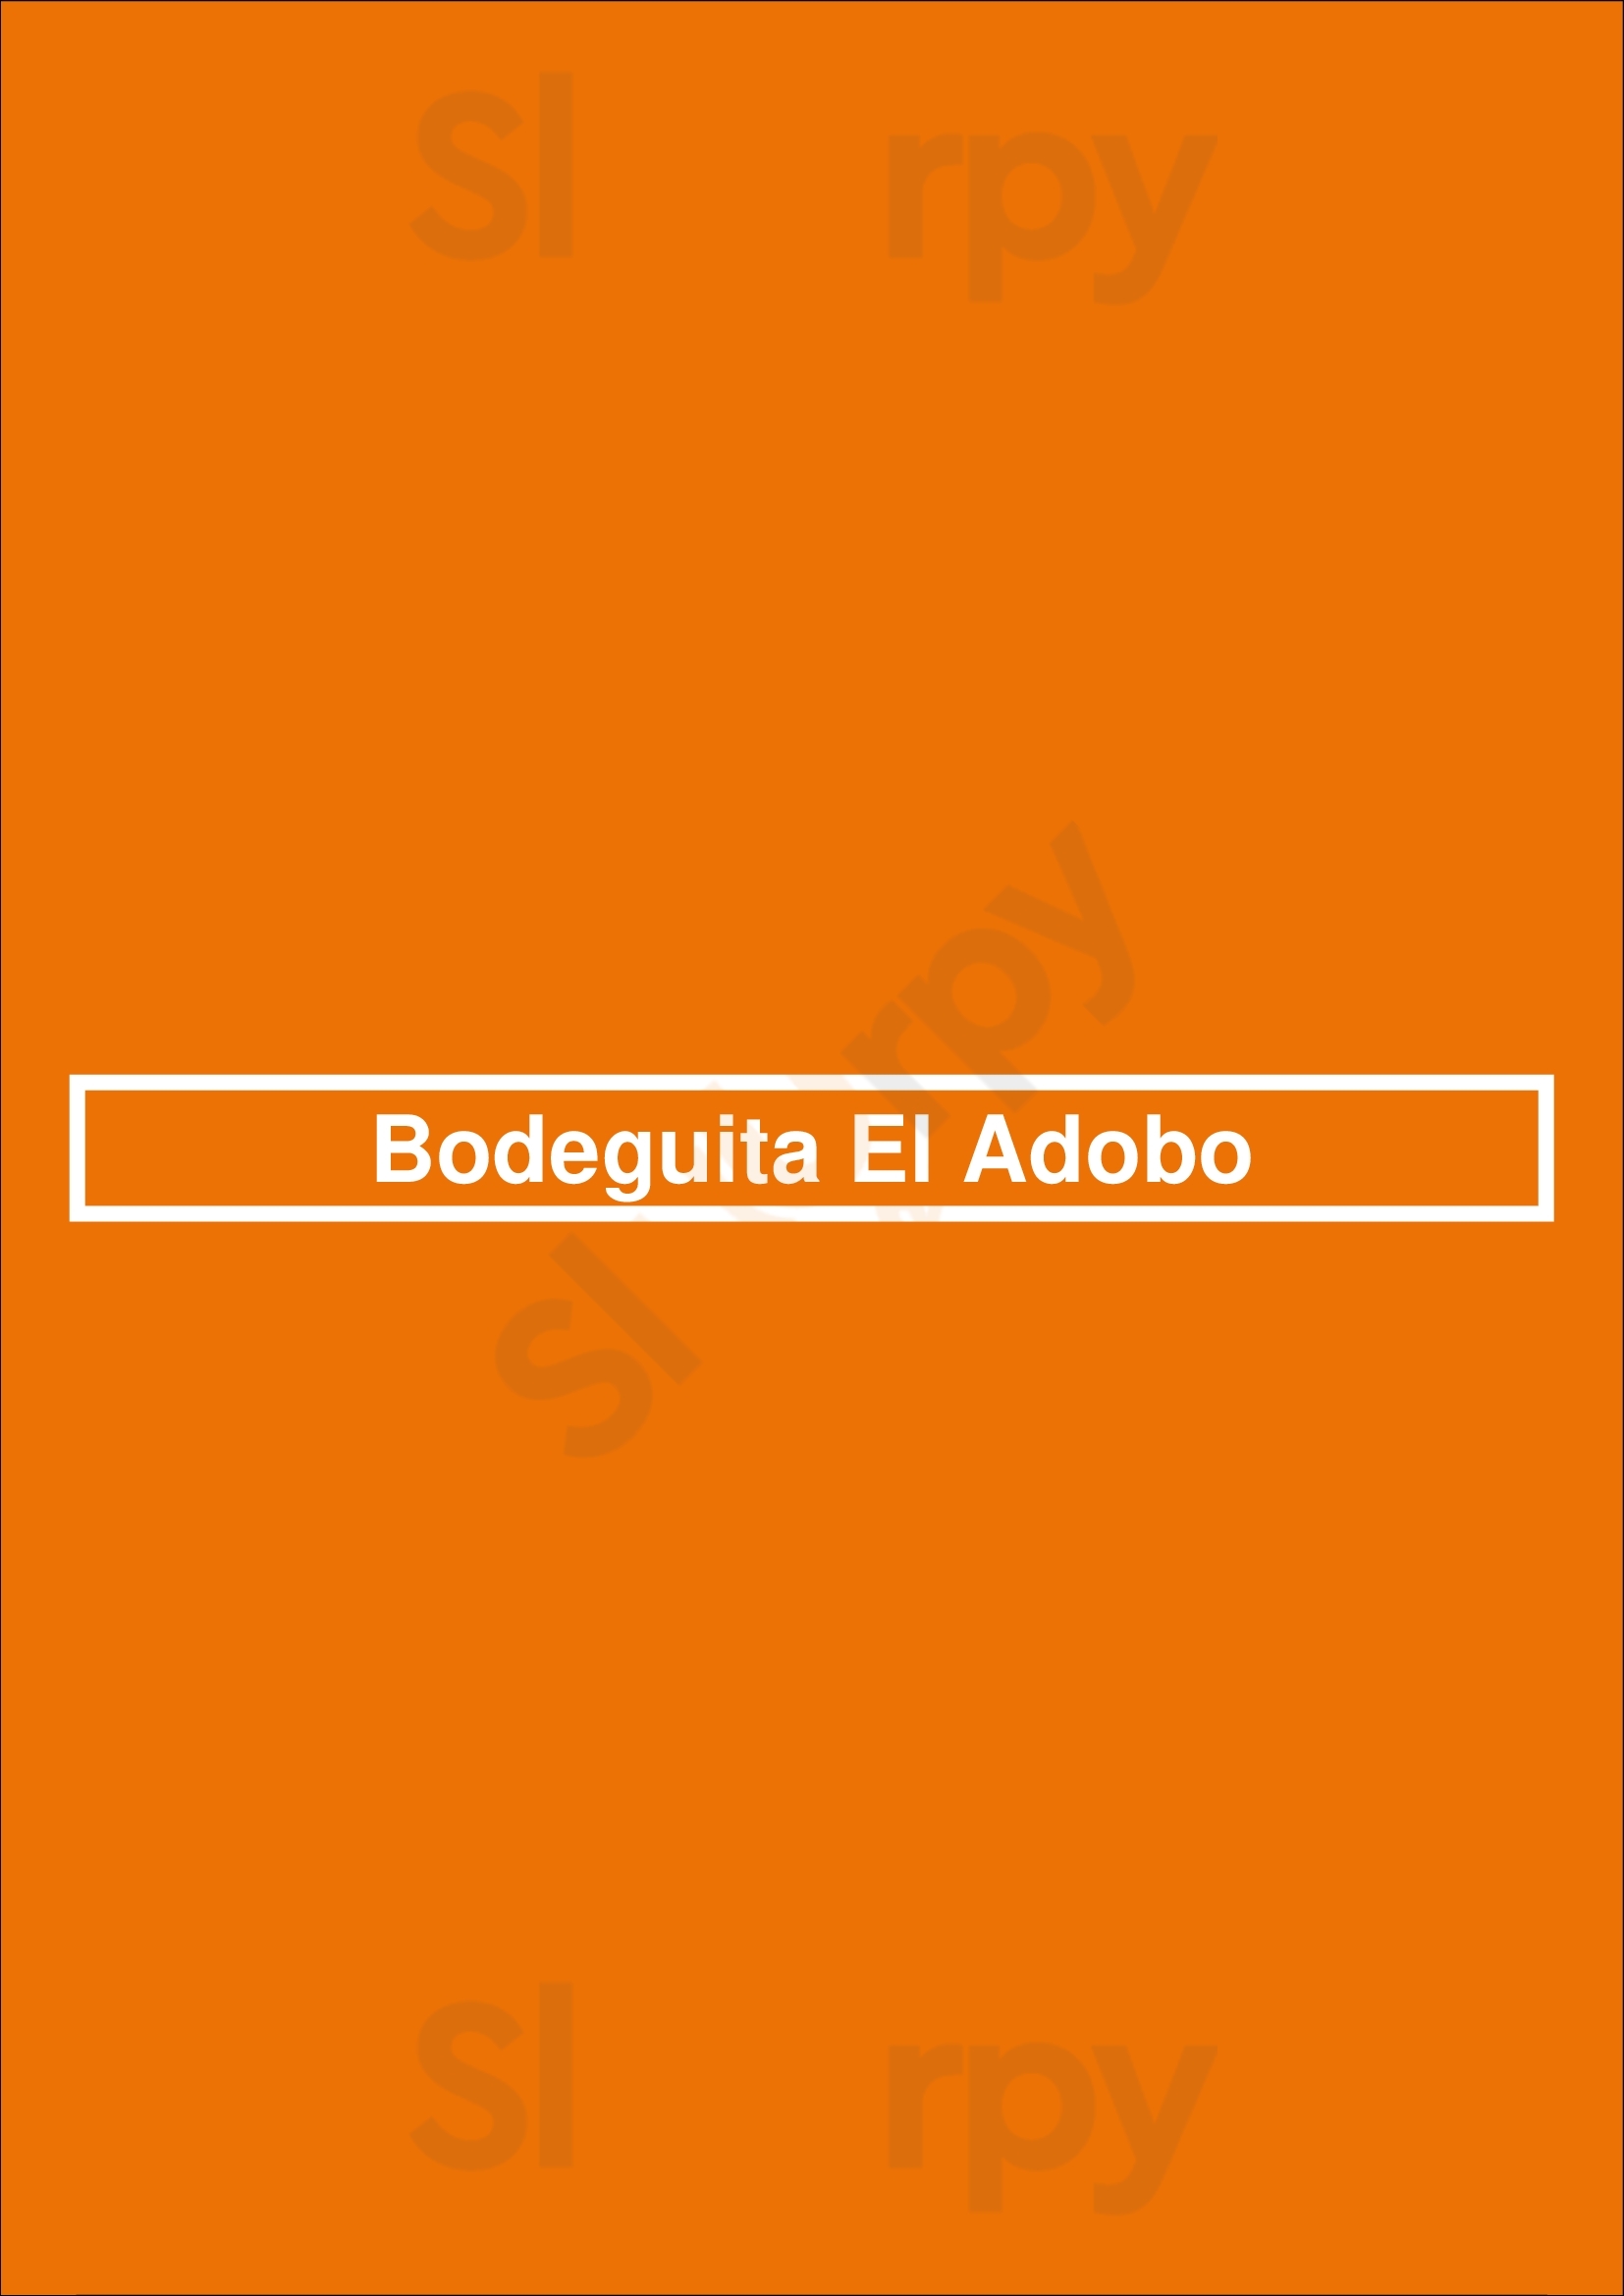 Bodeguita El Adobo Cádiz Menu - 1